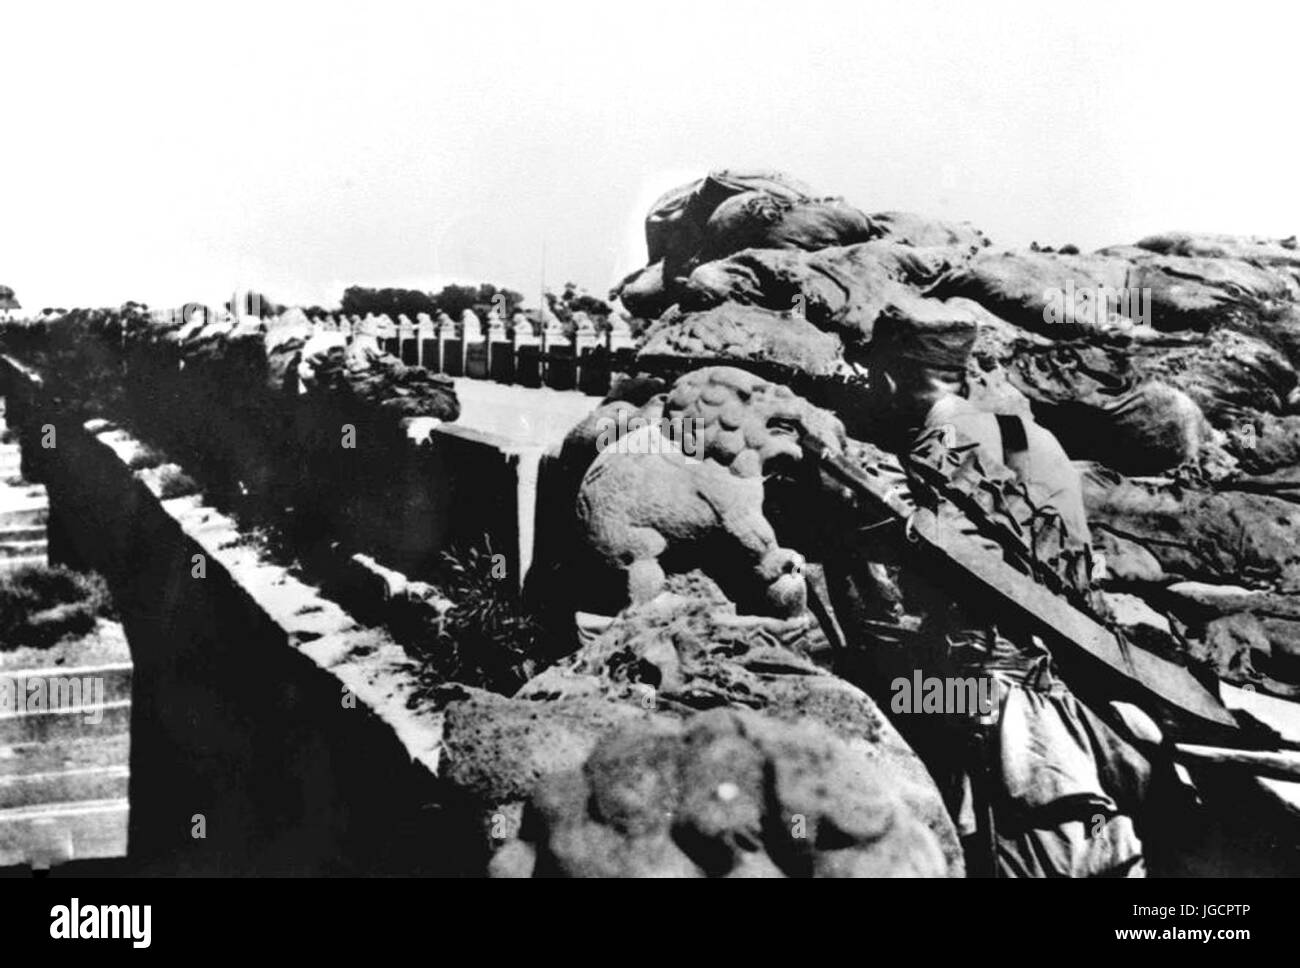 (170706) -- PECHINO, 6 luglio 2017 (Xinhua) -- File mostra fotografica di soldati del n. 29 nazionalisti Corps lotta difficile resistere alla tentazione di invasori giapponesi a ponte Lugou a Pechino. La Cina è stata la prima nazione a lottare contro le forze fasciste. La lotta iniziata il 18 settembre 1931, quando le truppe giapponesi hanno iniziato la loro invasione del nord-est della Cina. Essa è stata intensificata quando il Giappone a piena scala invasione iniziò dopo un fondamentale punto di accesso a Pechino, Ponte Lugou, noto anche come ponte di Marco Polo, è stato attaccato da truppe giapponesi il 7 luglio 1937. (Xinhua) (MCG) Foto Stock